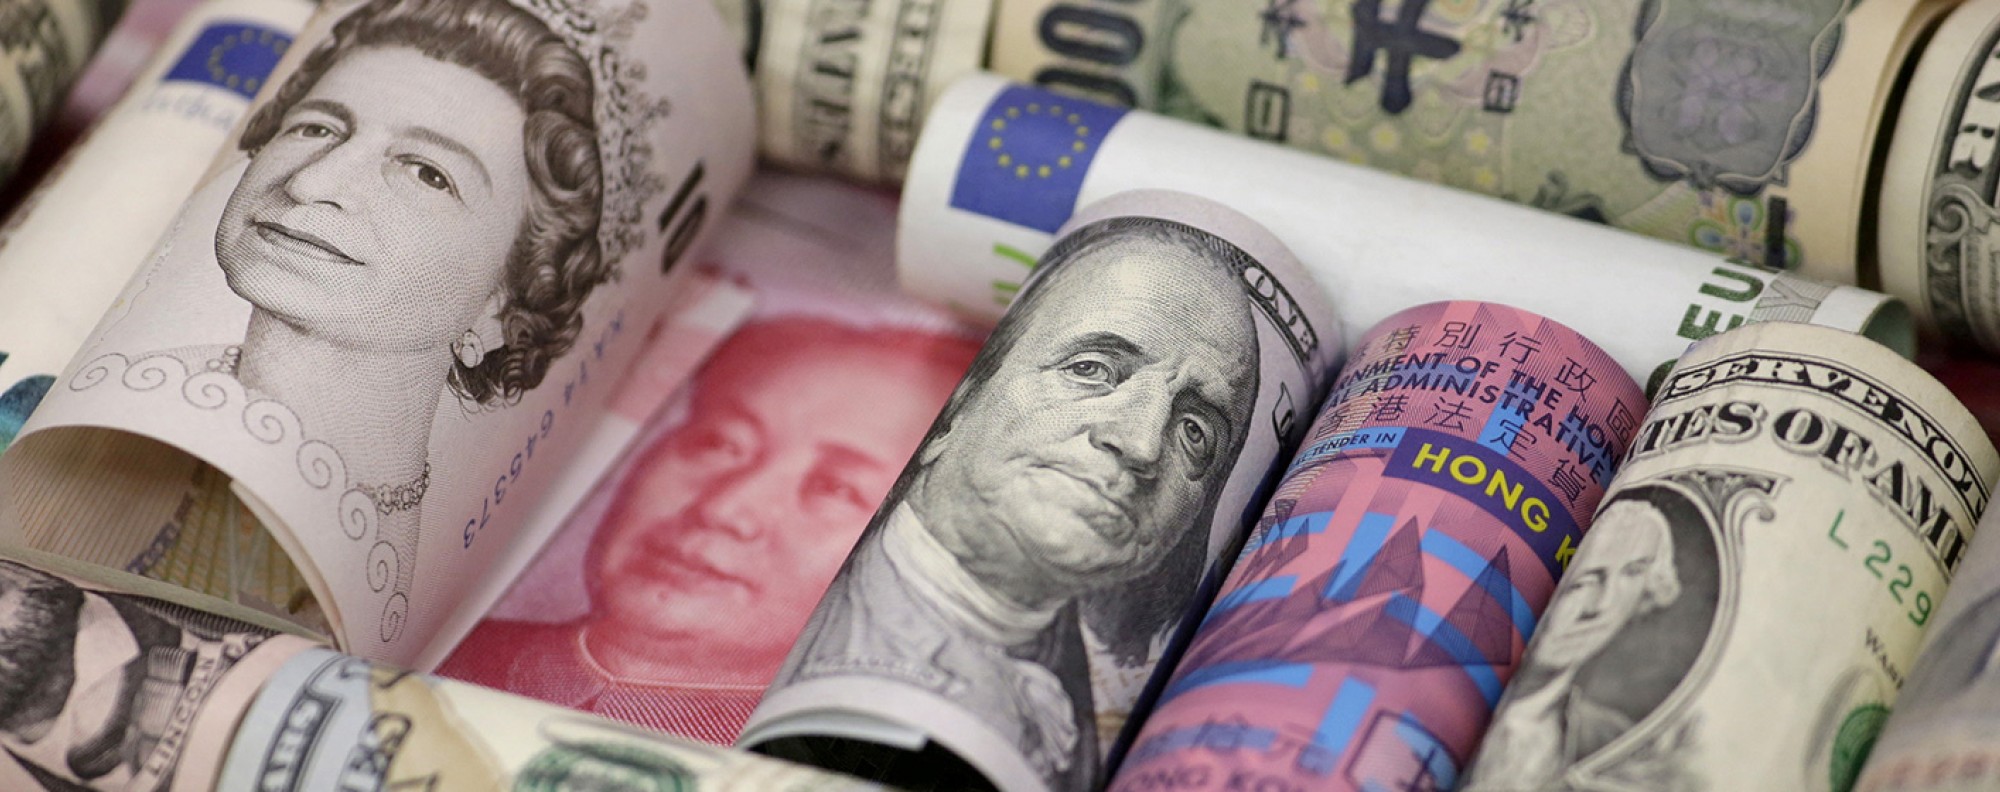 Euro, Hong Kong dollar, US dollar, Japanese yen, British pound and Chinese yuan banknotes. Photo: Reuters